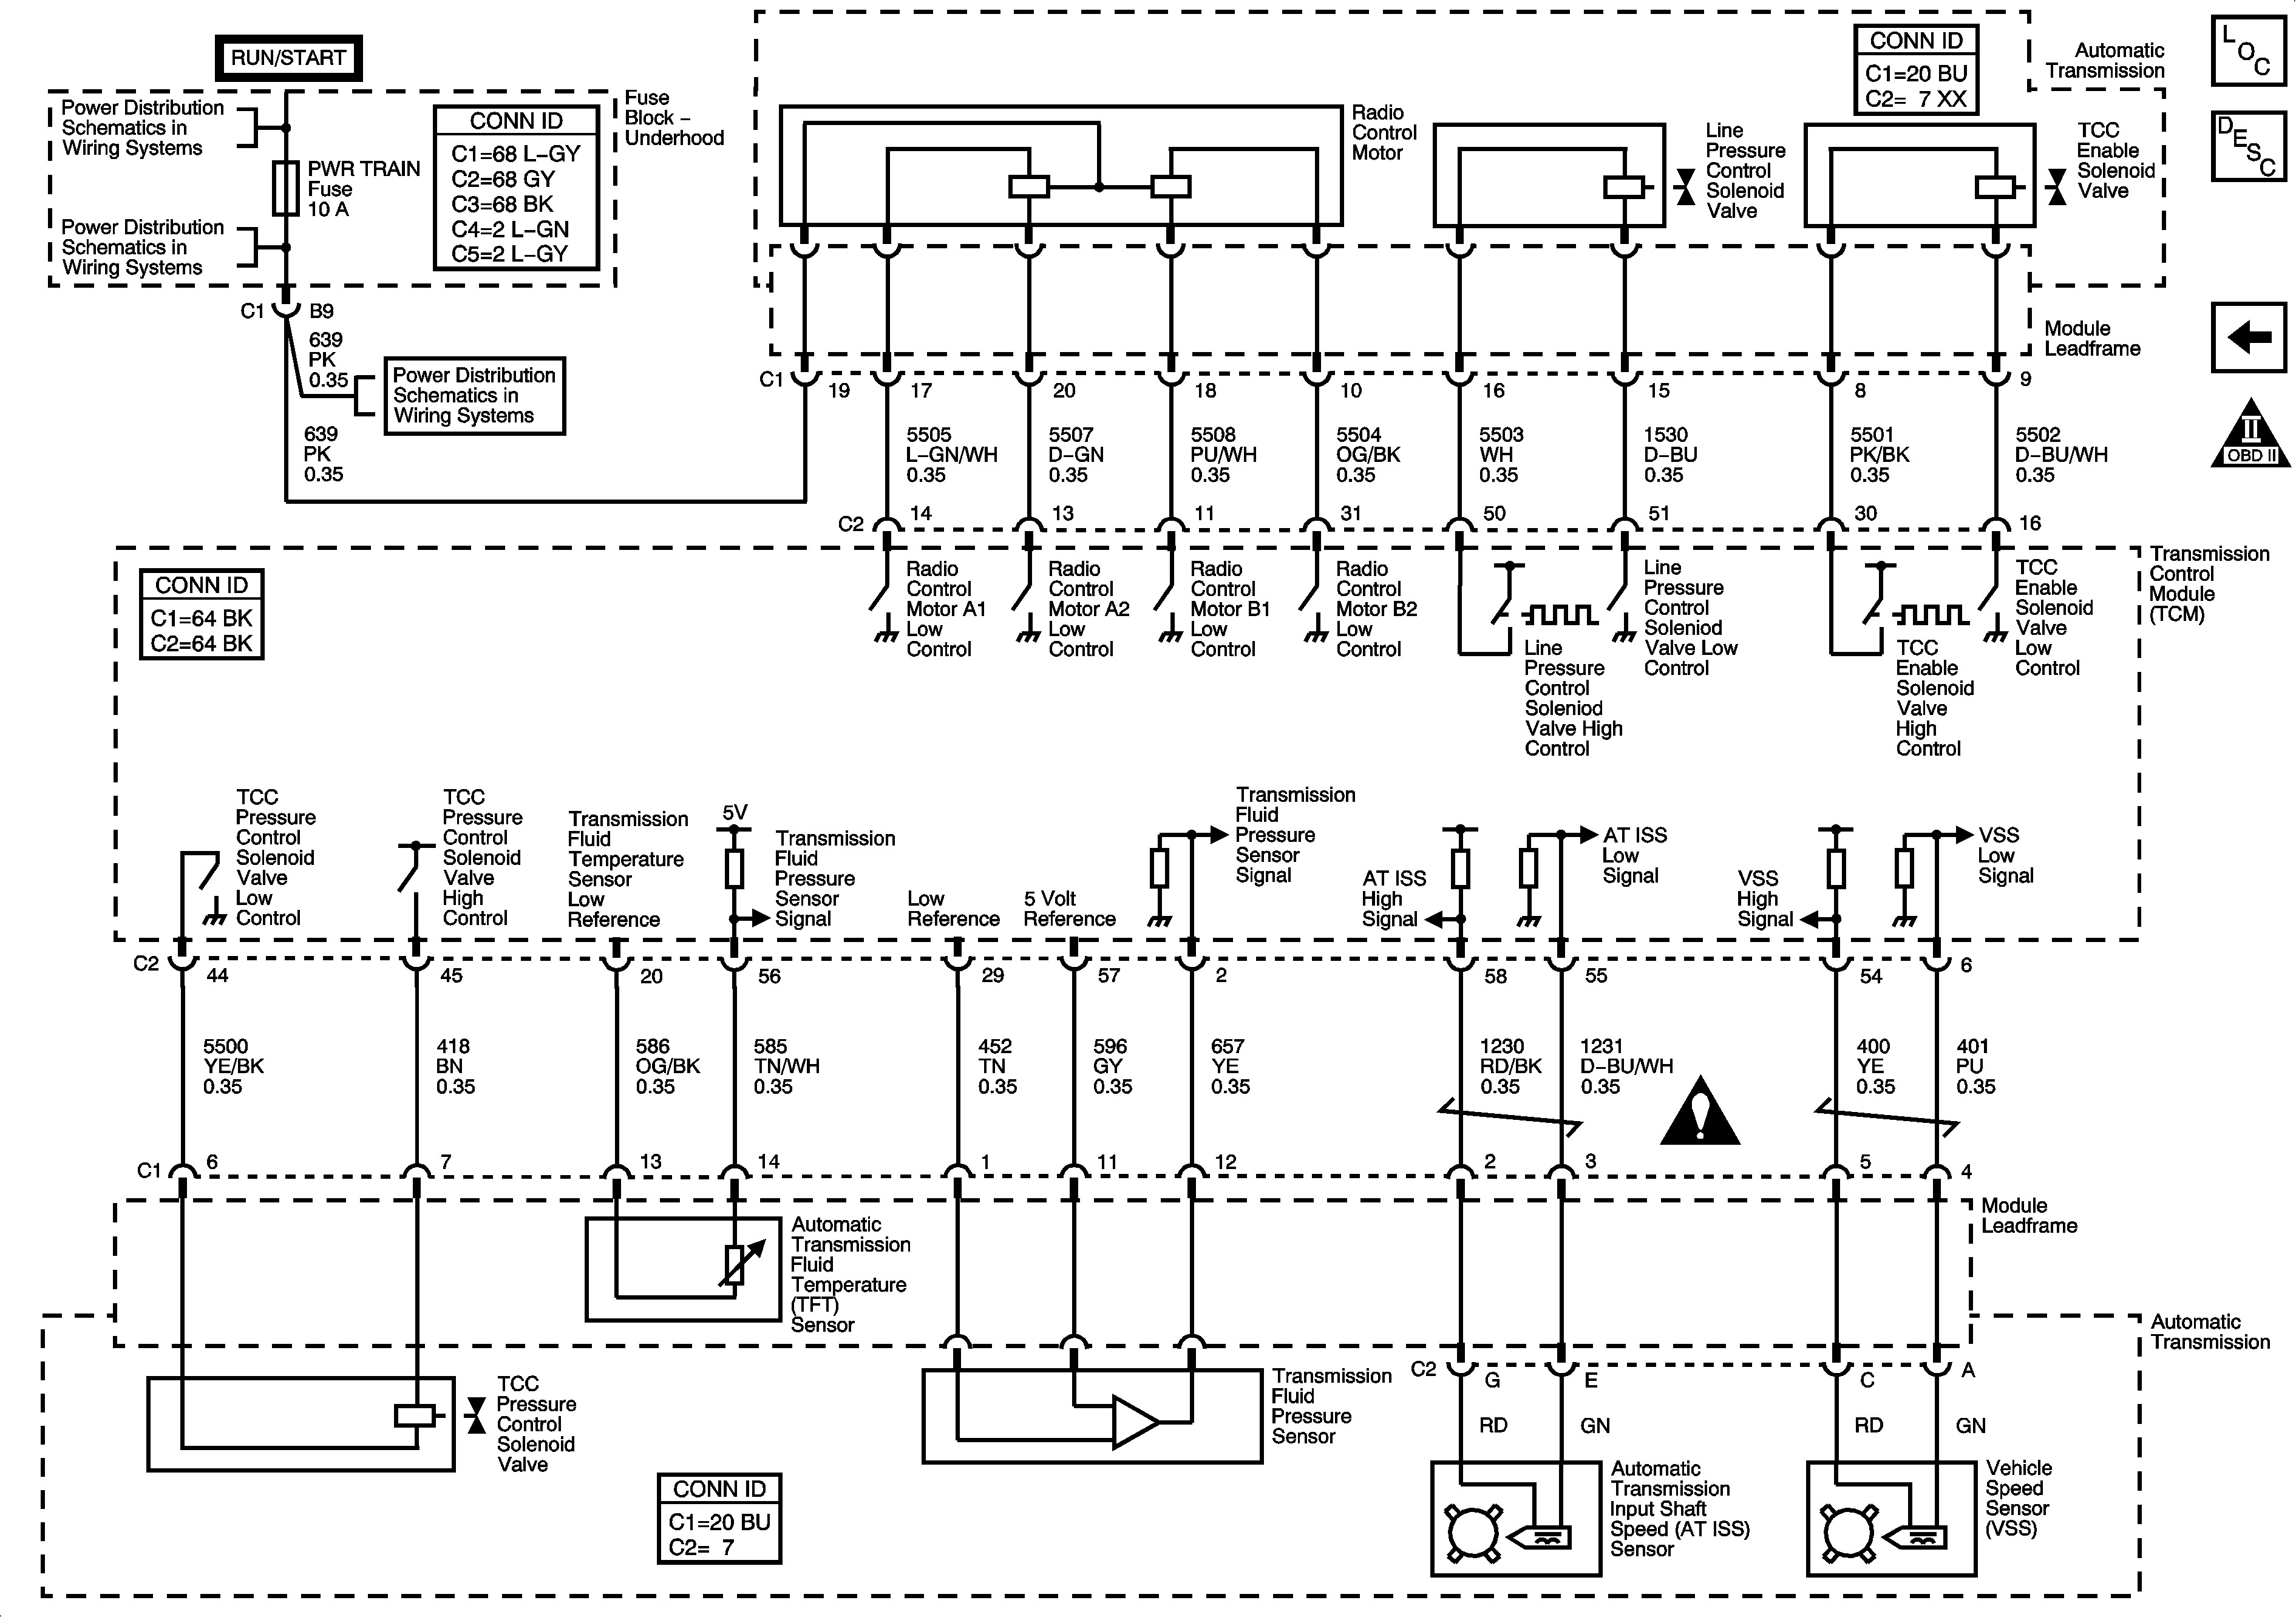 Saturn Engine Diagram Saturn Vue Wiring Harness Diagram Wiring Diagram Of Saturn Engine Diagram